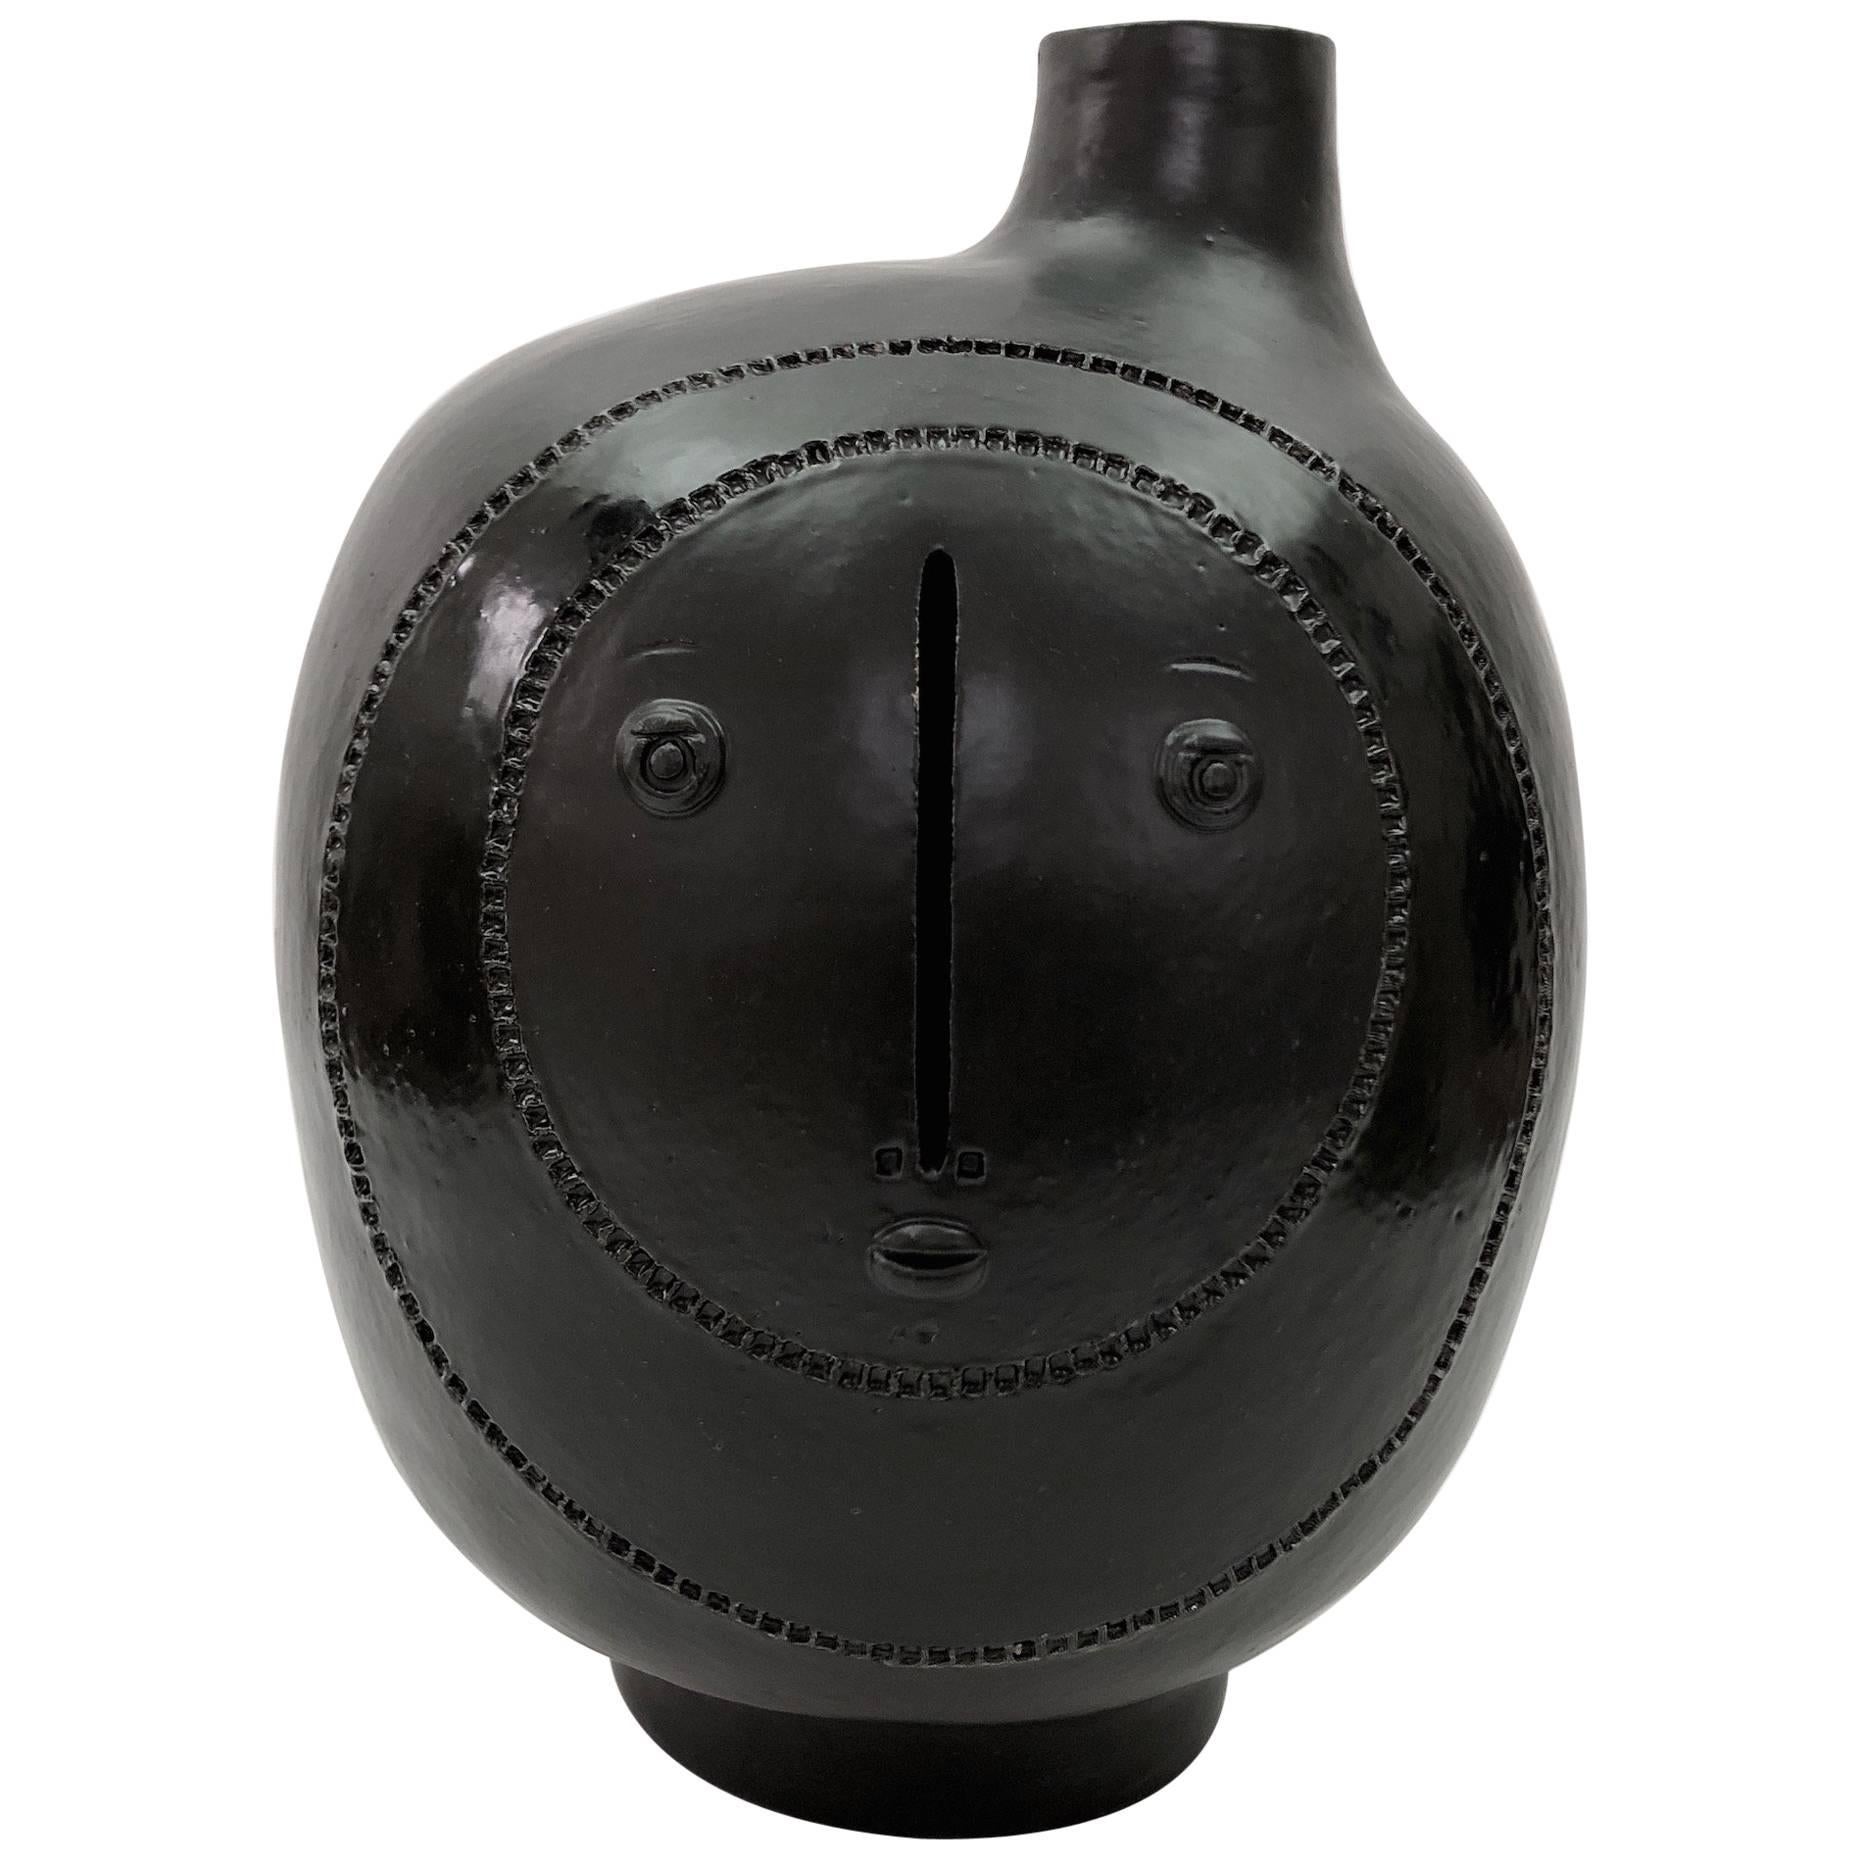 DALO - Large Ceramic Table Lamp Glazed in Black